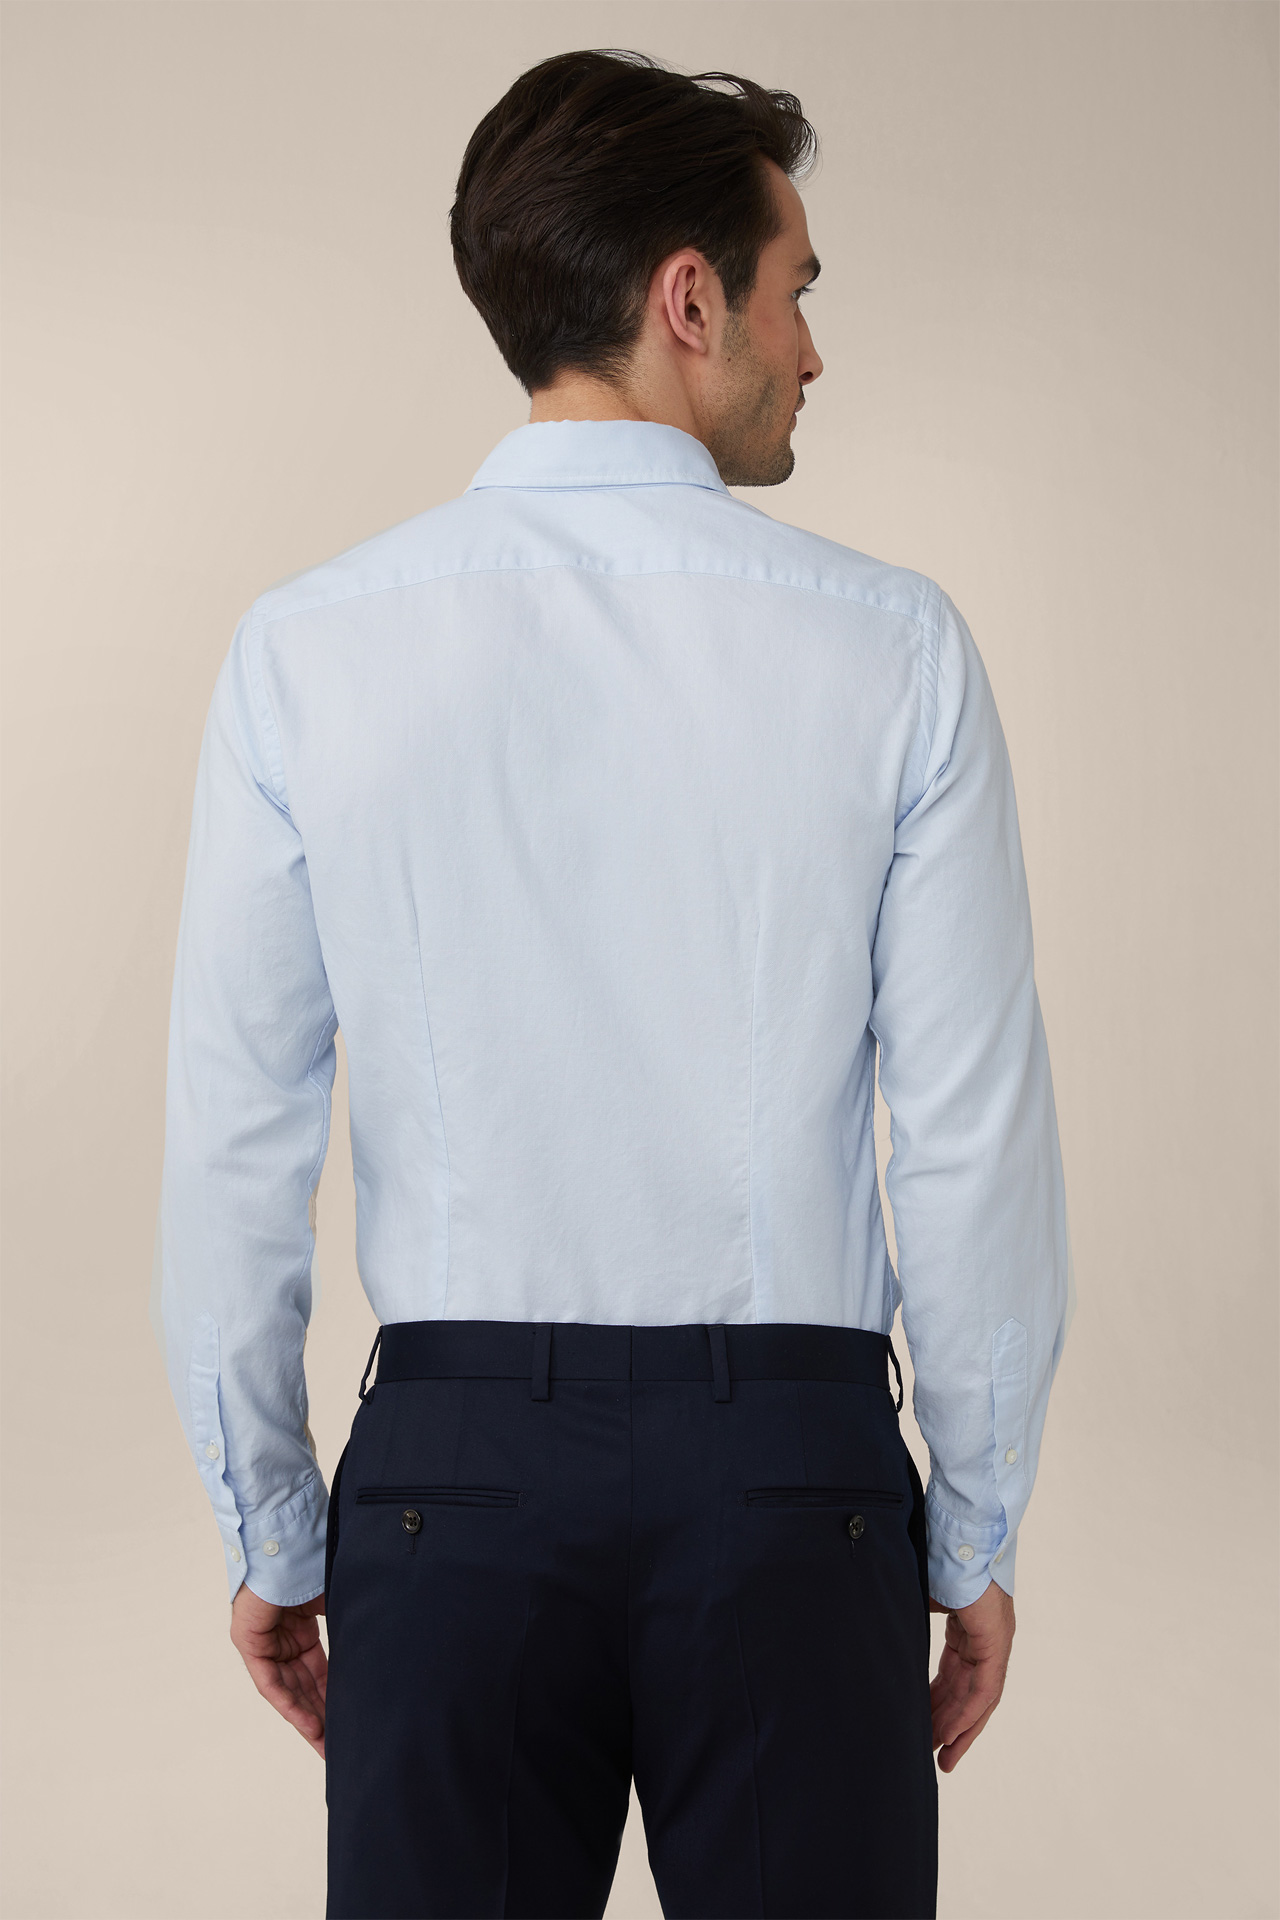 Smart Lano shirt in light blue 